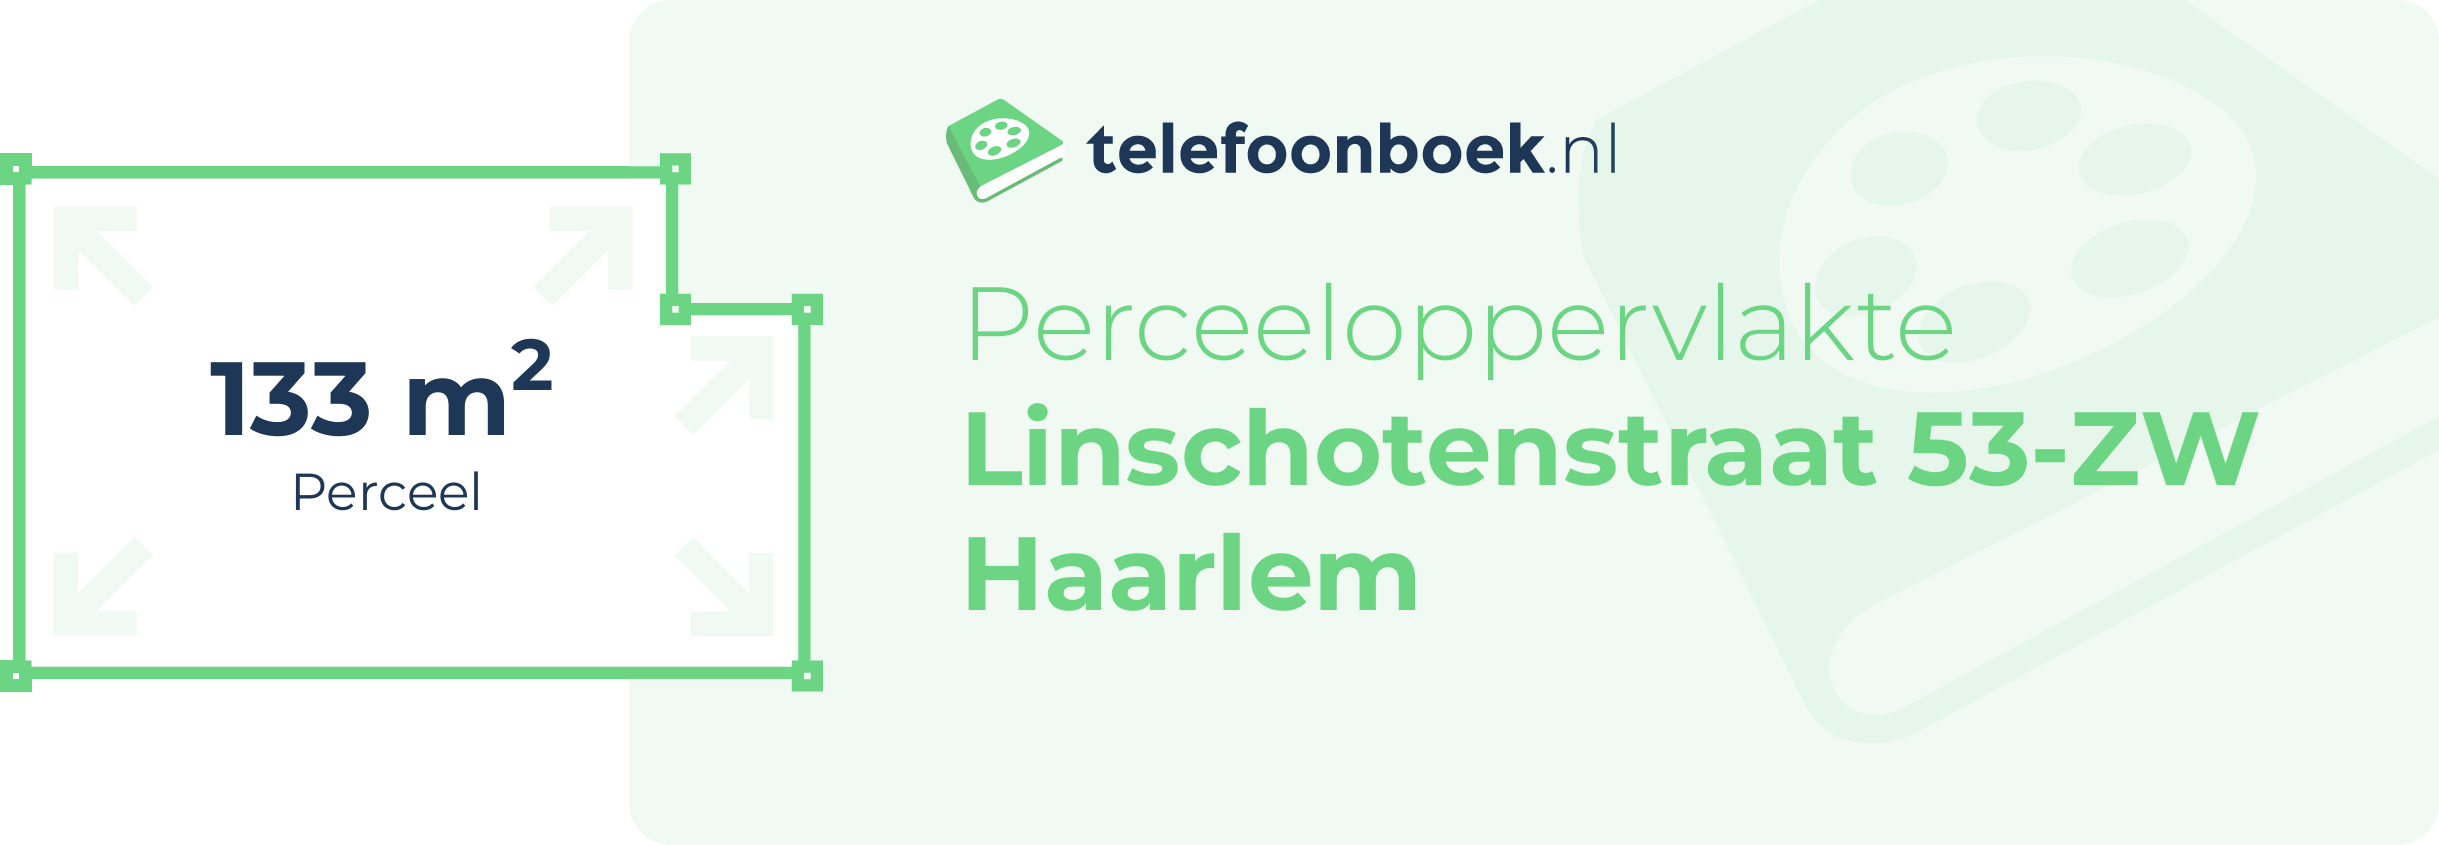 Perceeloppervlakte Linschotenstraat 53-ZW Haarlem